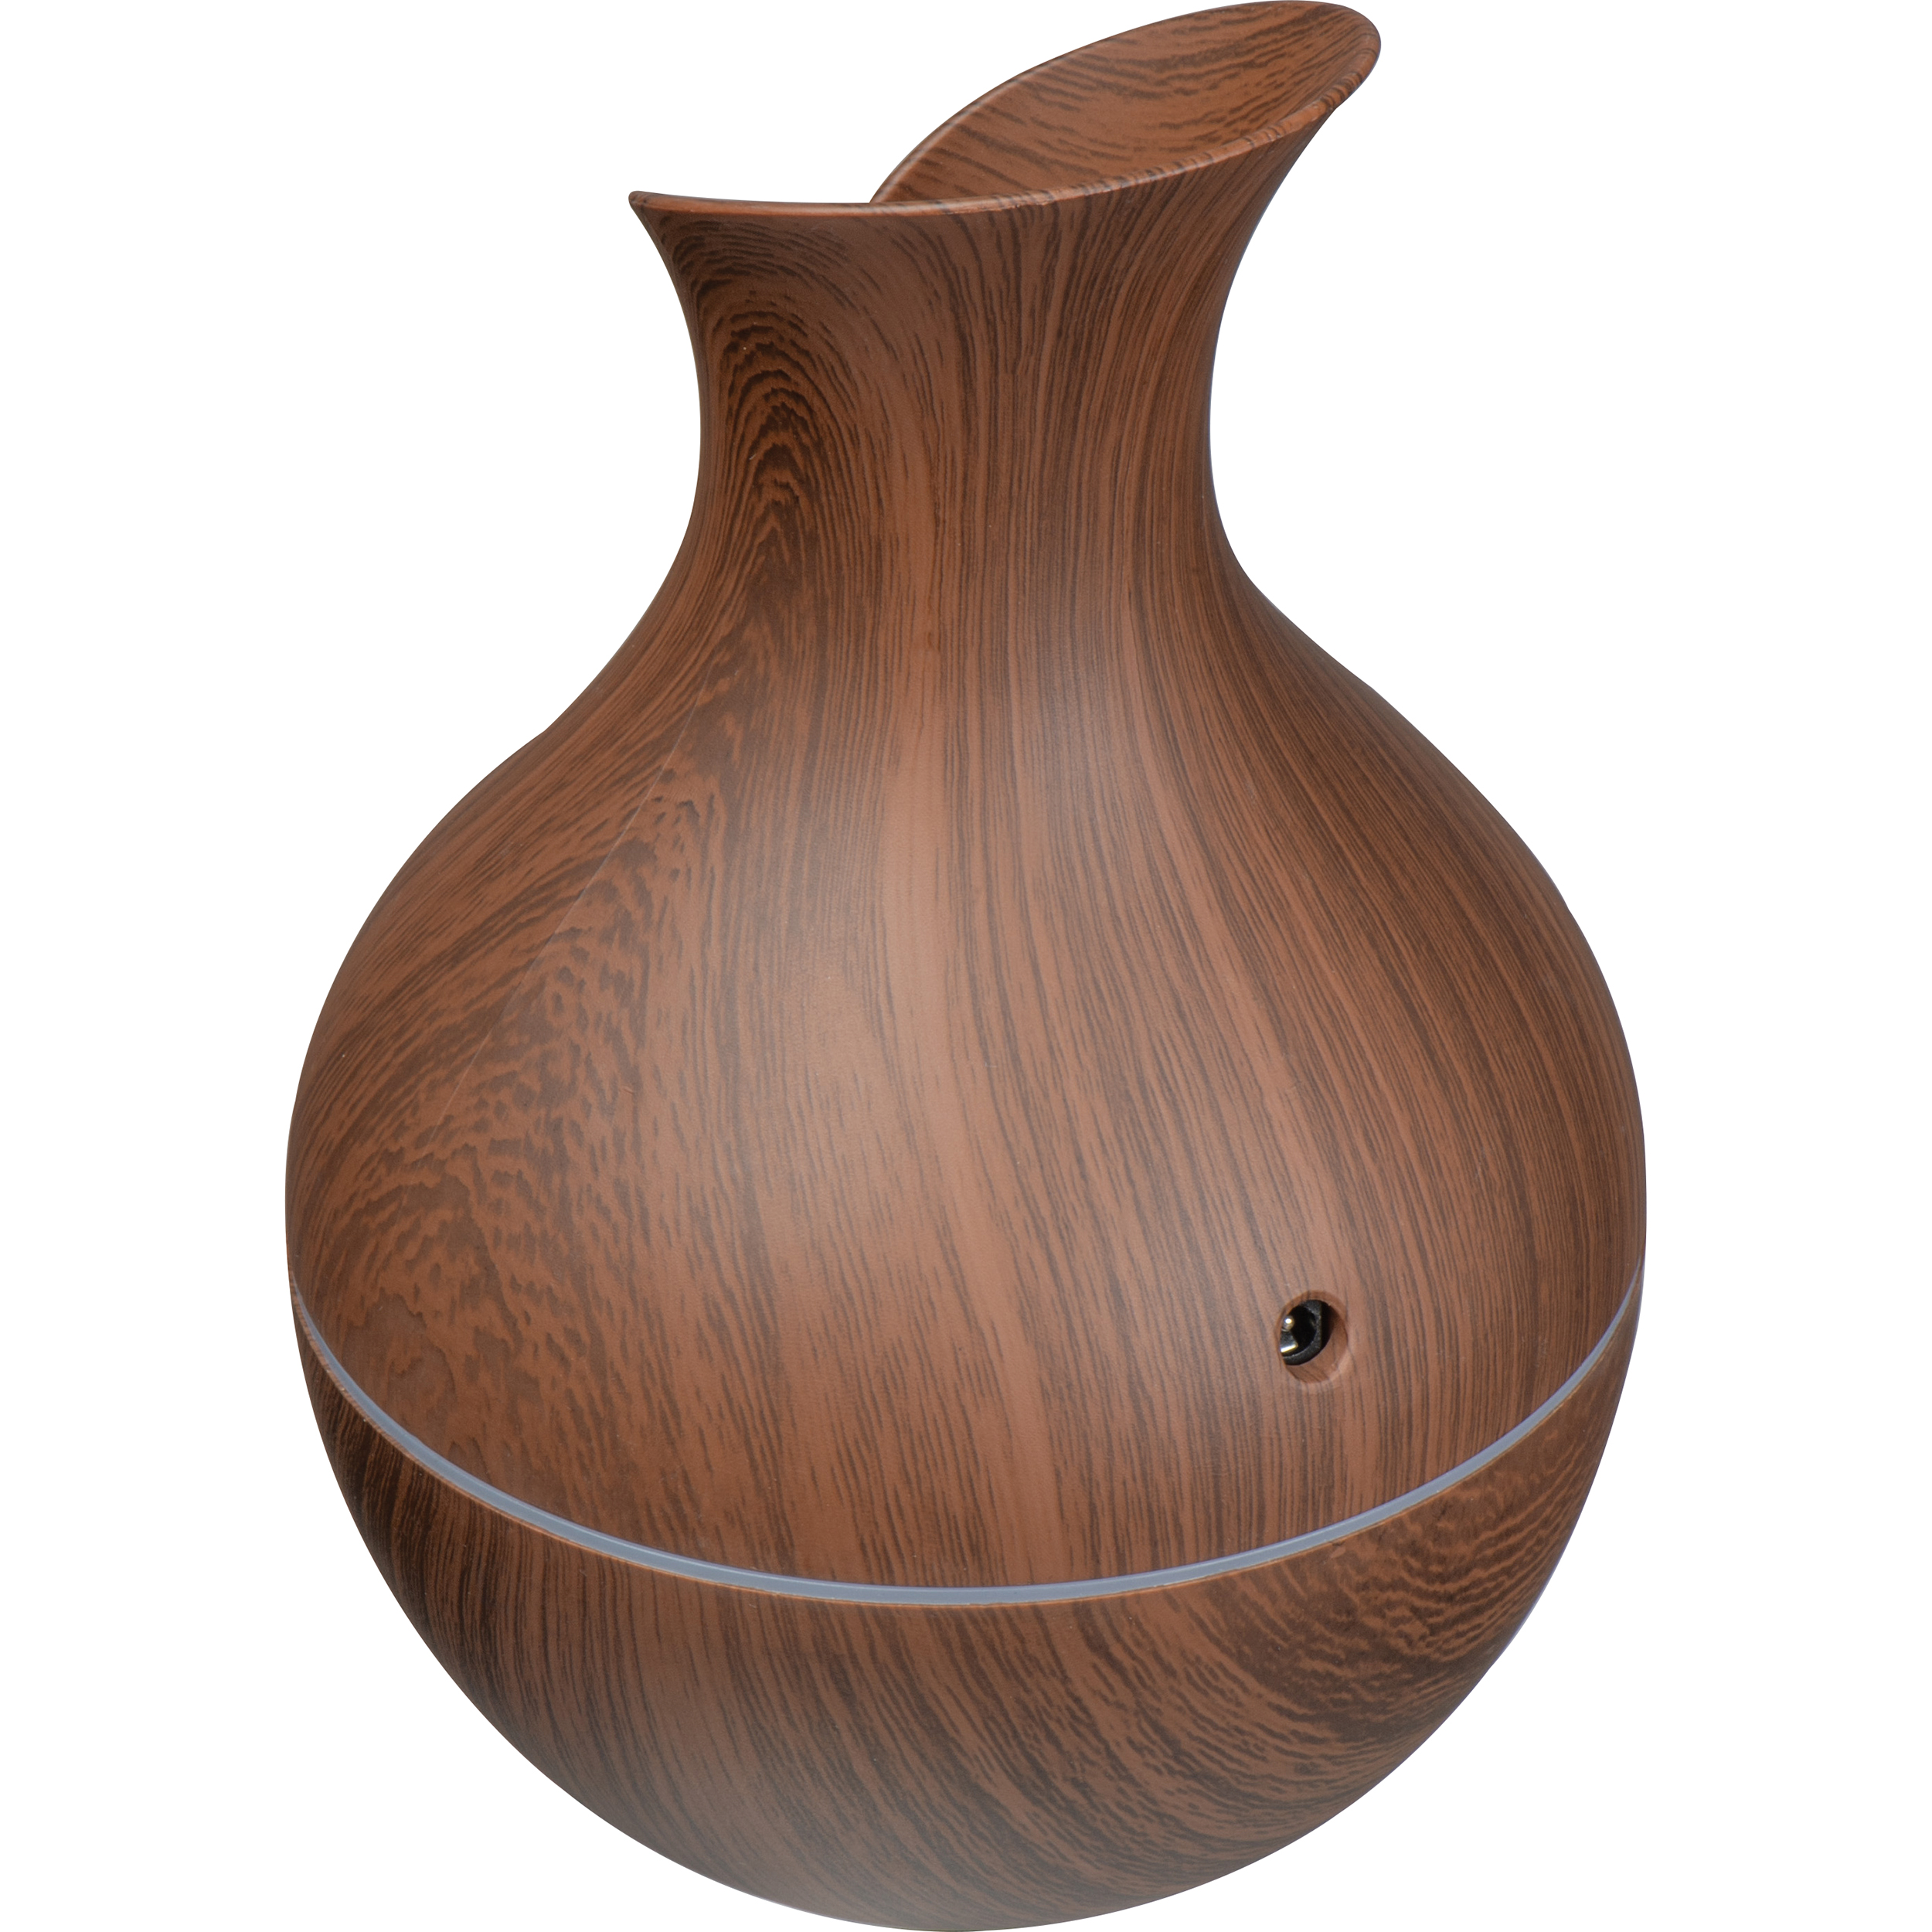 Humidifier with dark wood look